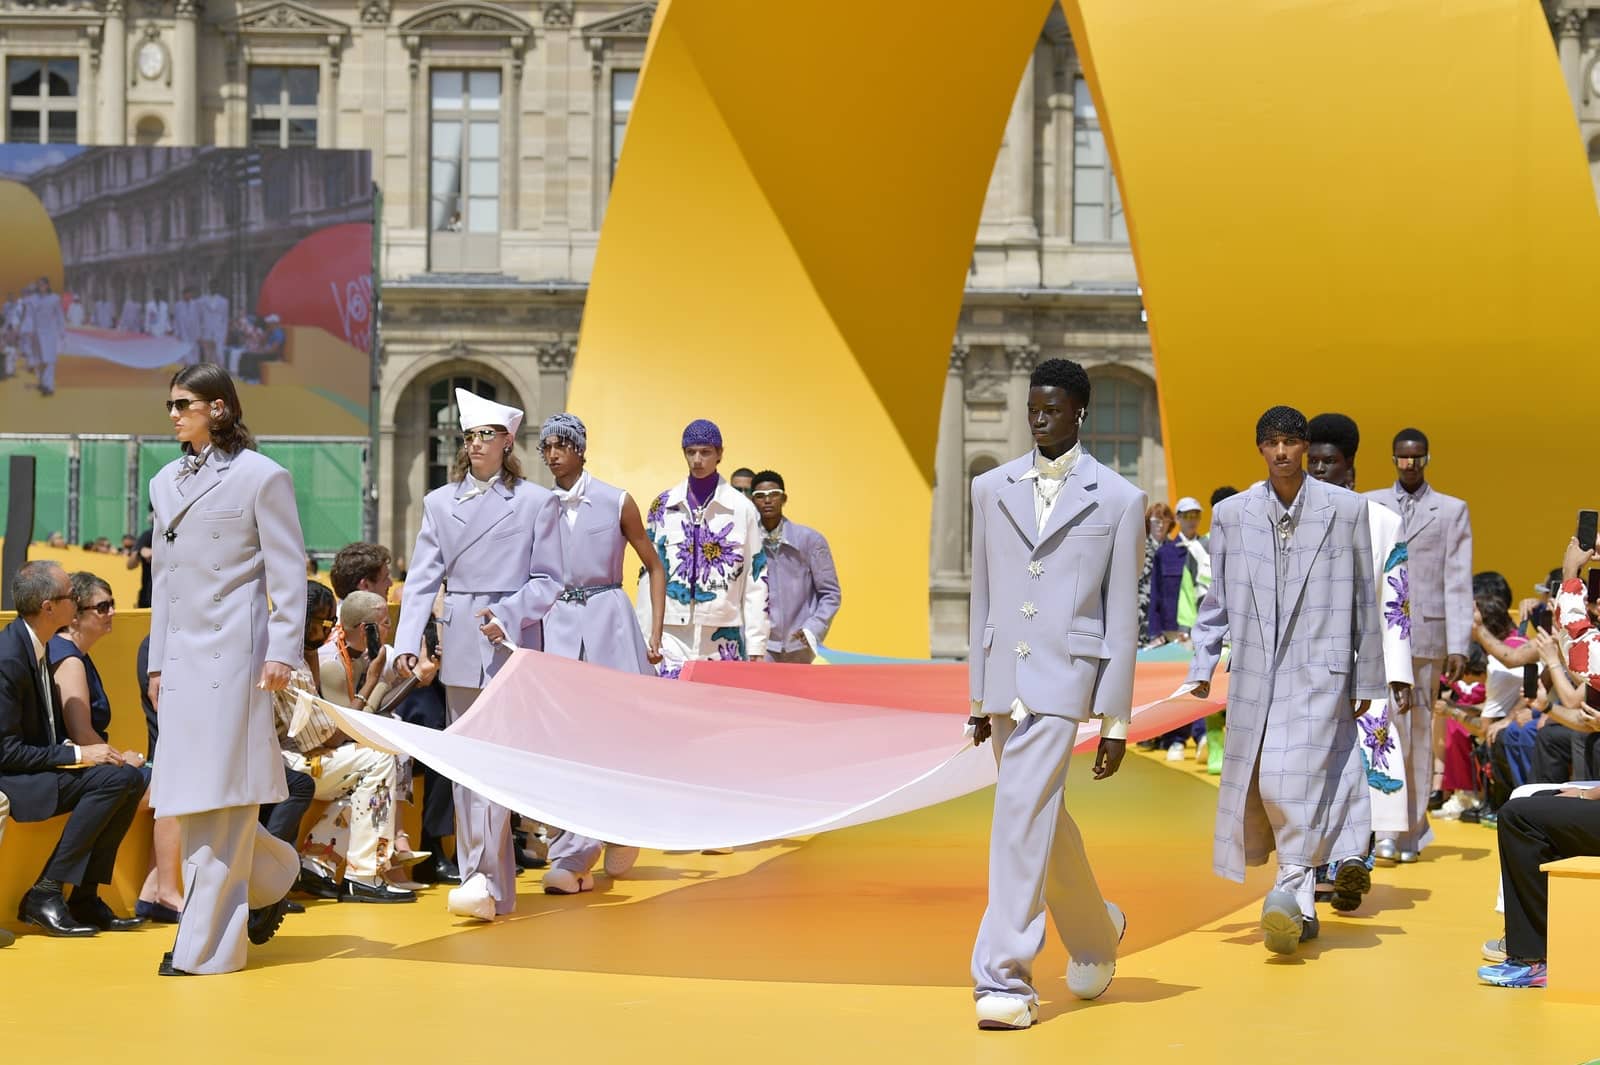 Retour en enfance pour le défilé Homme Louis Vuitton printemps-été 2023